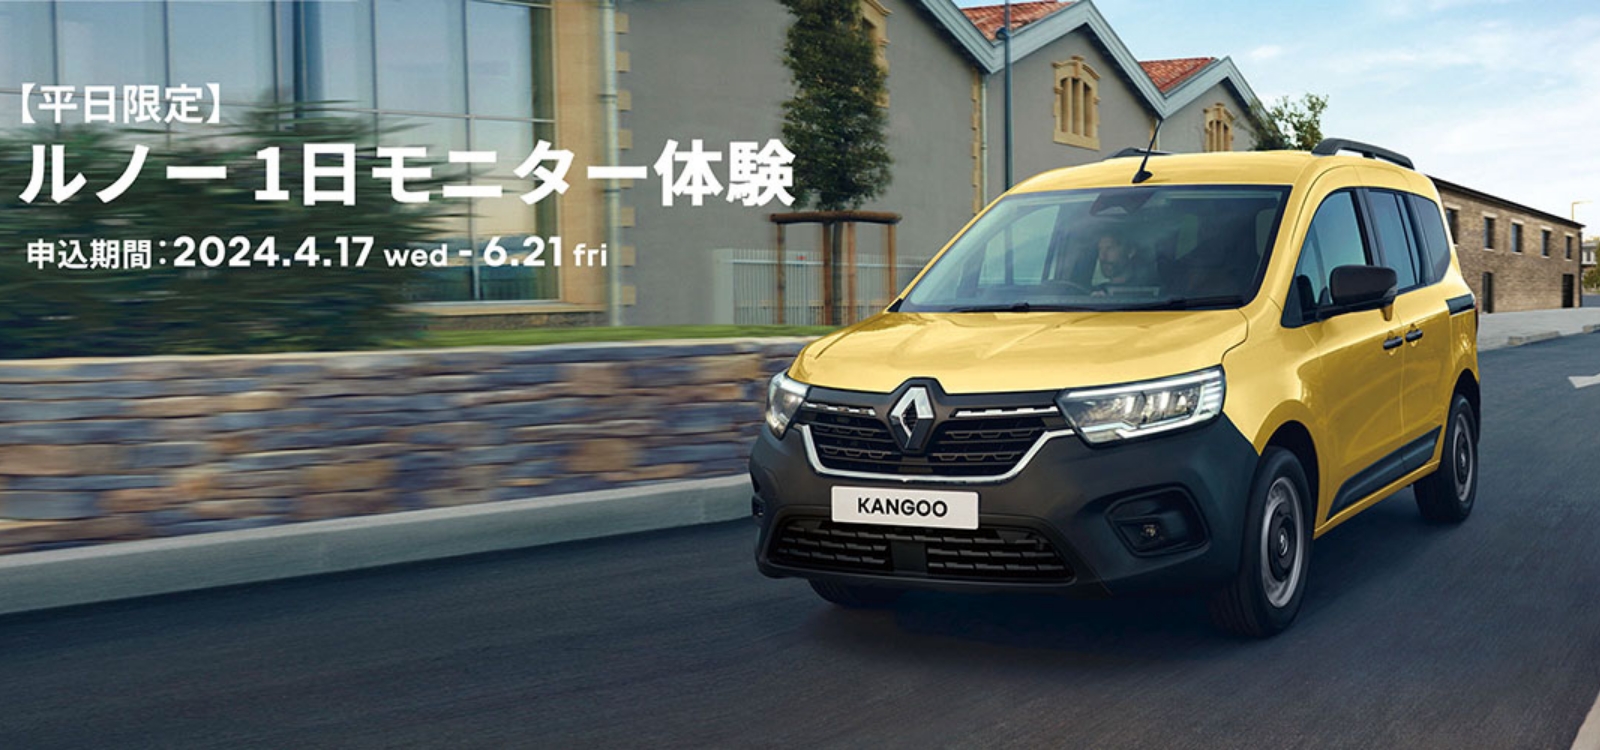 Renault Japon | ルノー1日モニター体験